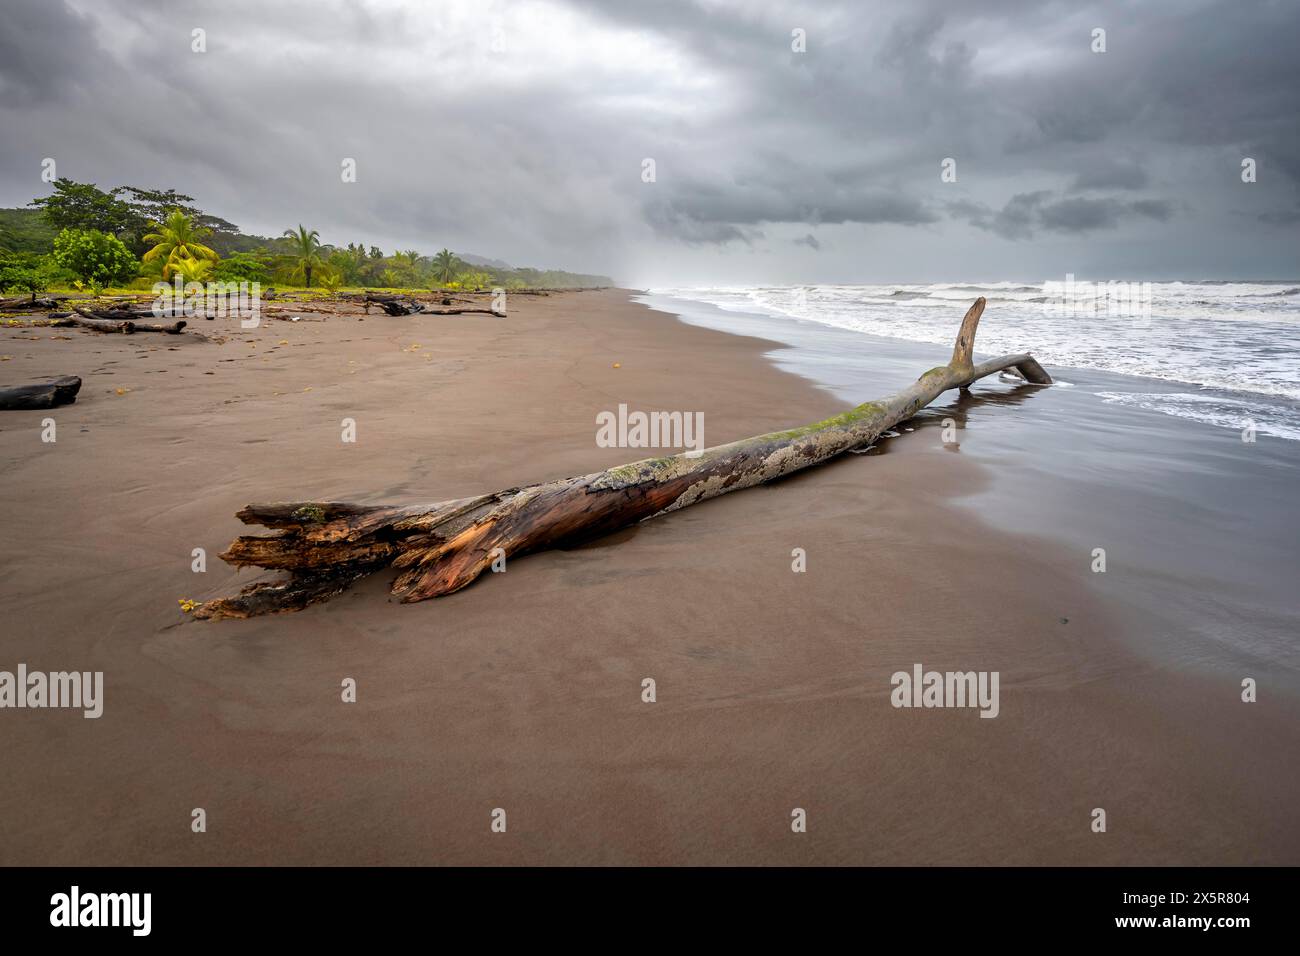 Tronc d'arbre sur la plage dans le surf, forêt tropicale et plage de sable sur la côte caribéenne, parc national de Tortuguero, Costa Rica Banque D'Images